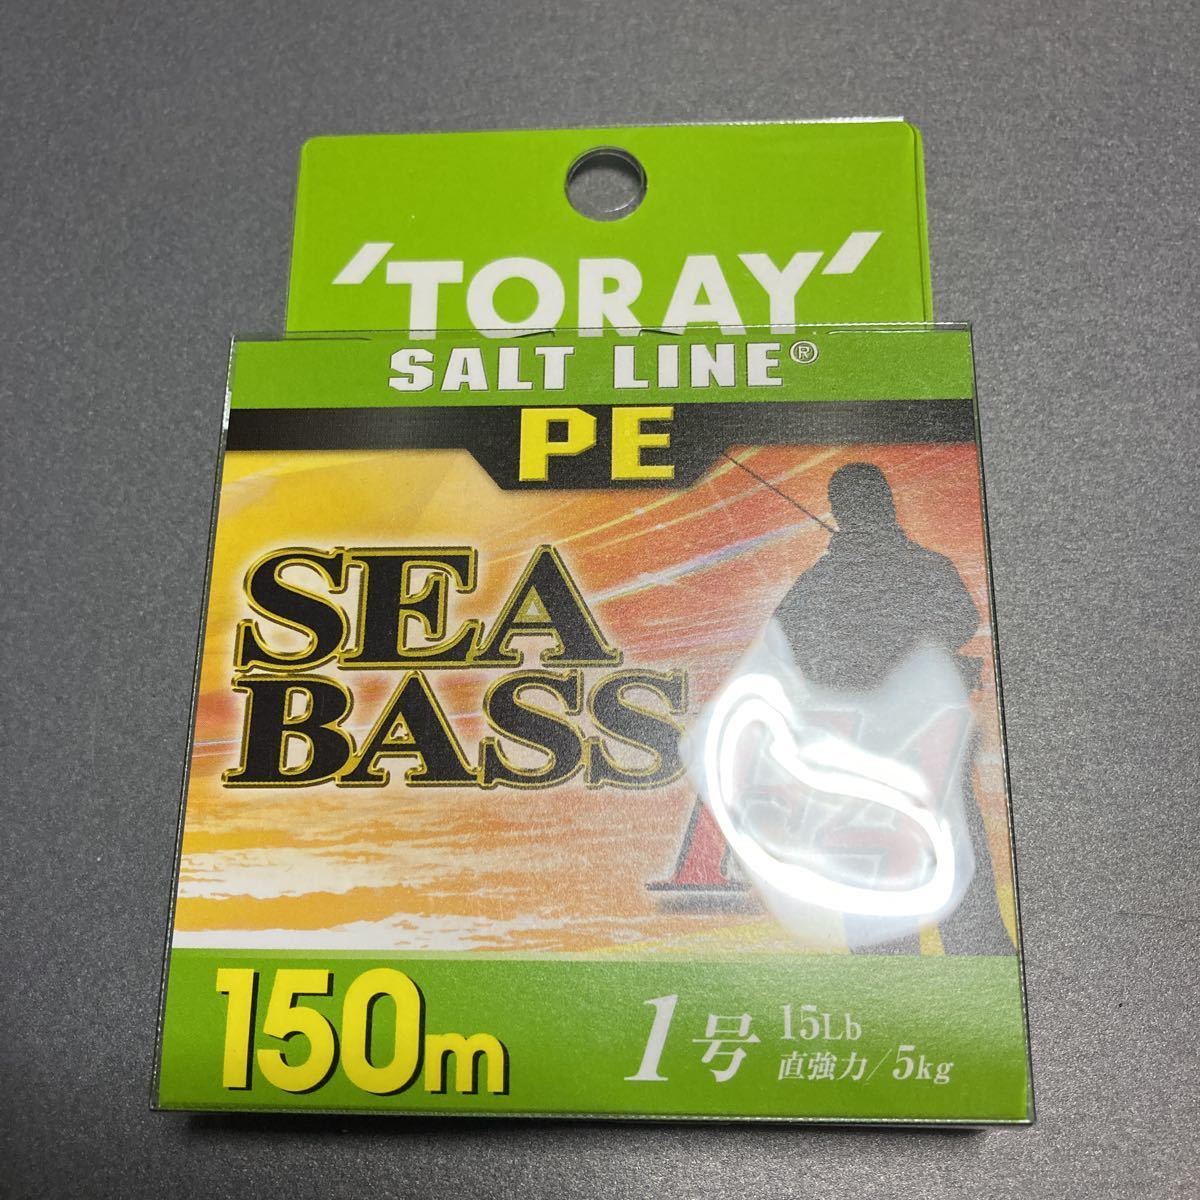 [ новый товар не использовался ] Toray PE линия Chivas F4 TORAY SALT LINE SEABASS F4 150m 1 номер 15LB #4